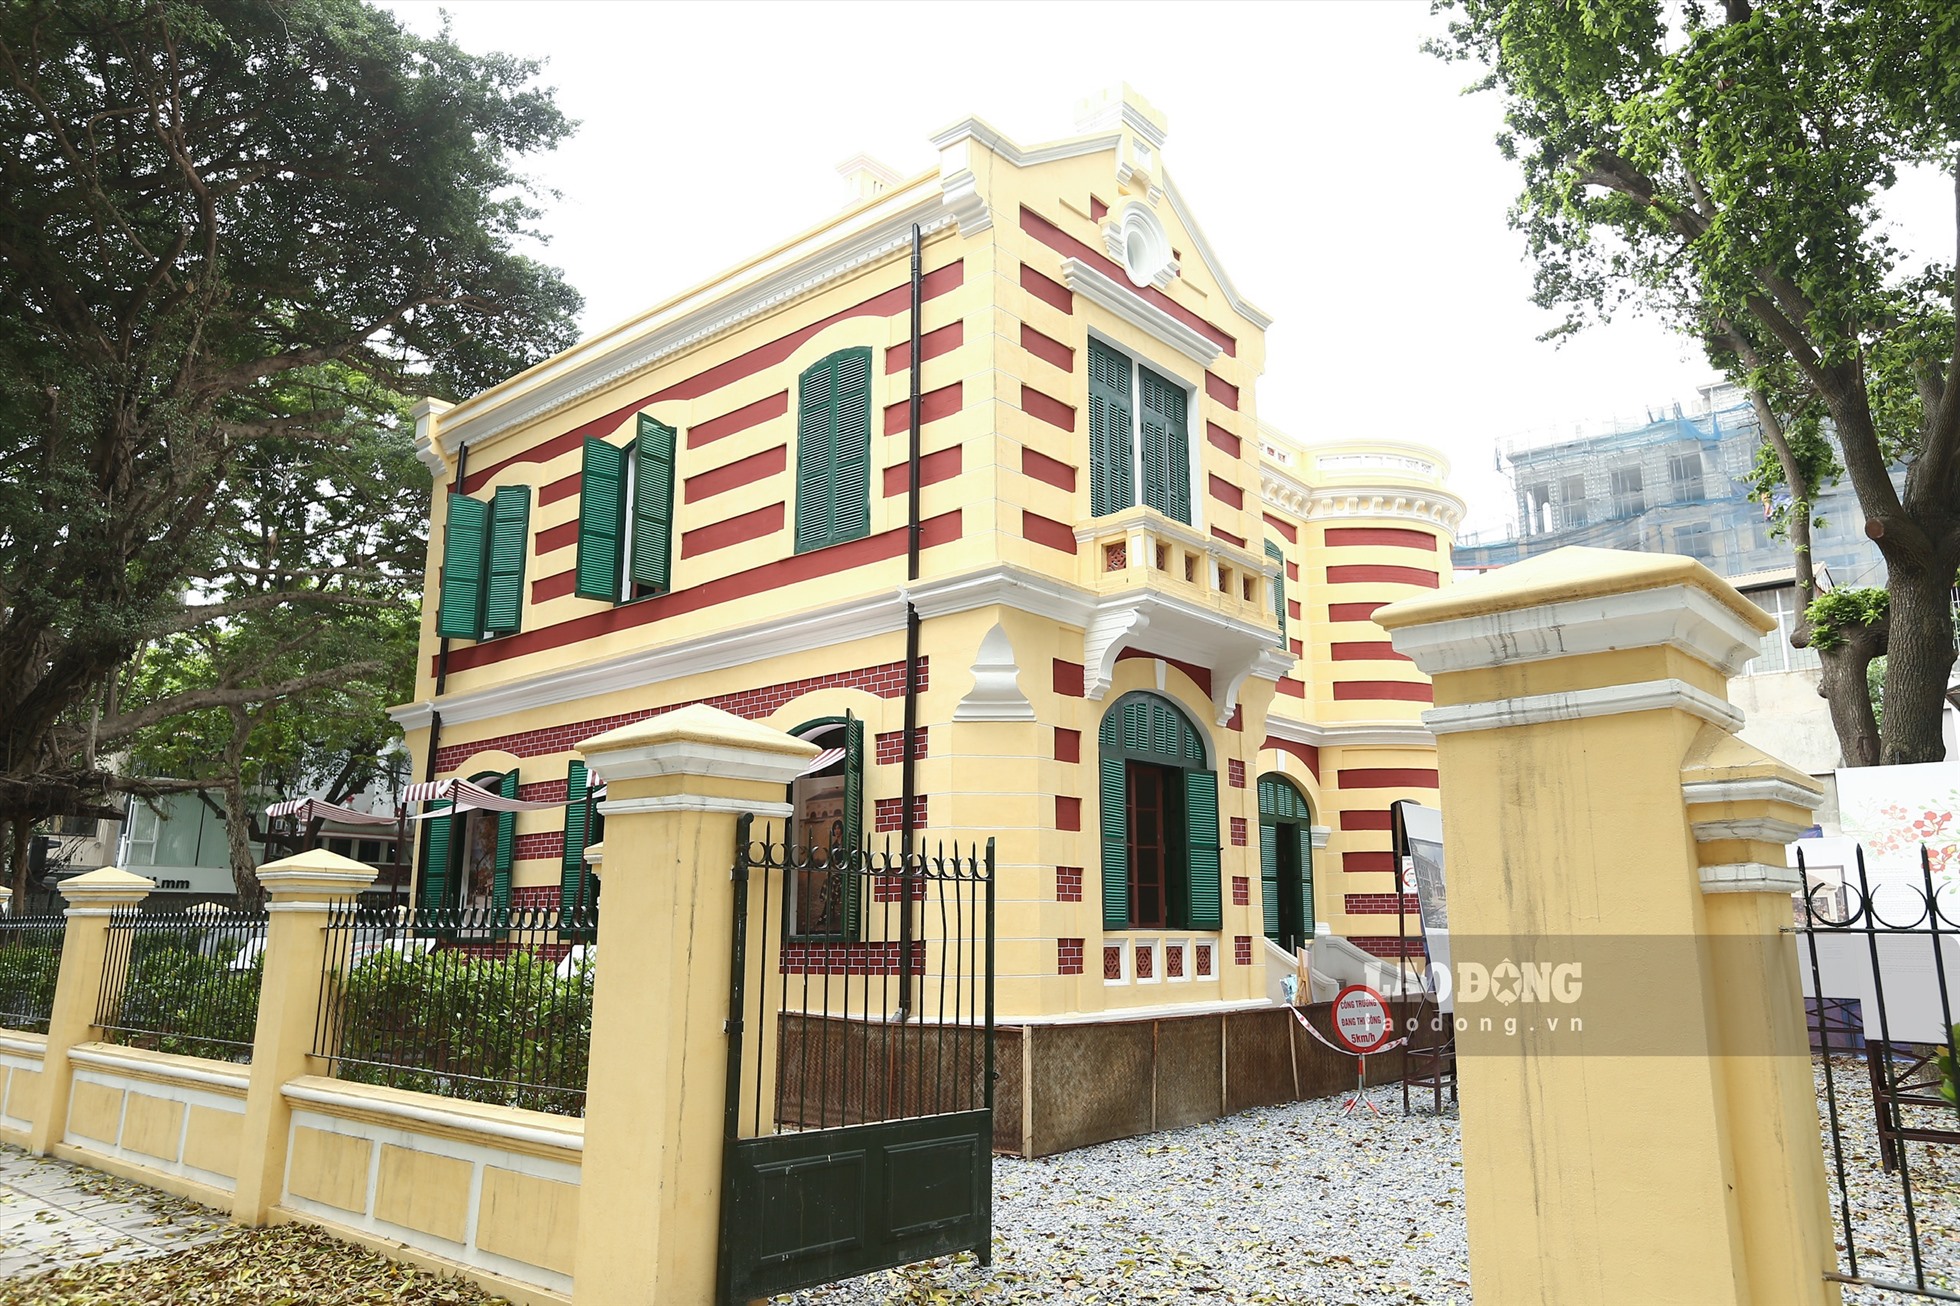 Ngôi biệt thự cổ số 49 Trần Hưng Đạo (Hoàn Kiếm, Hà Nội) đã cơ bản hoàn thành các hạng mục lớn sau 1 năm trùng tu. Ảnh: Minh Quân